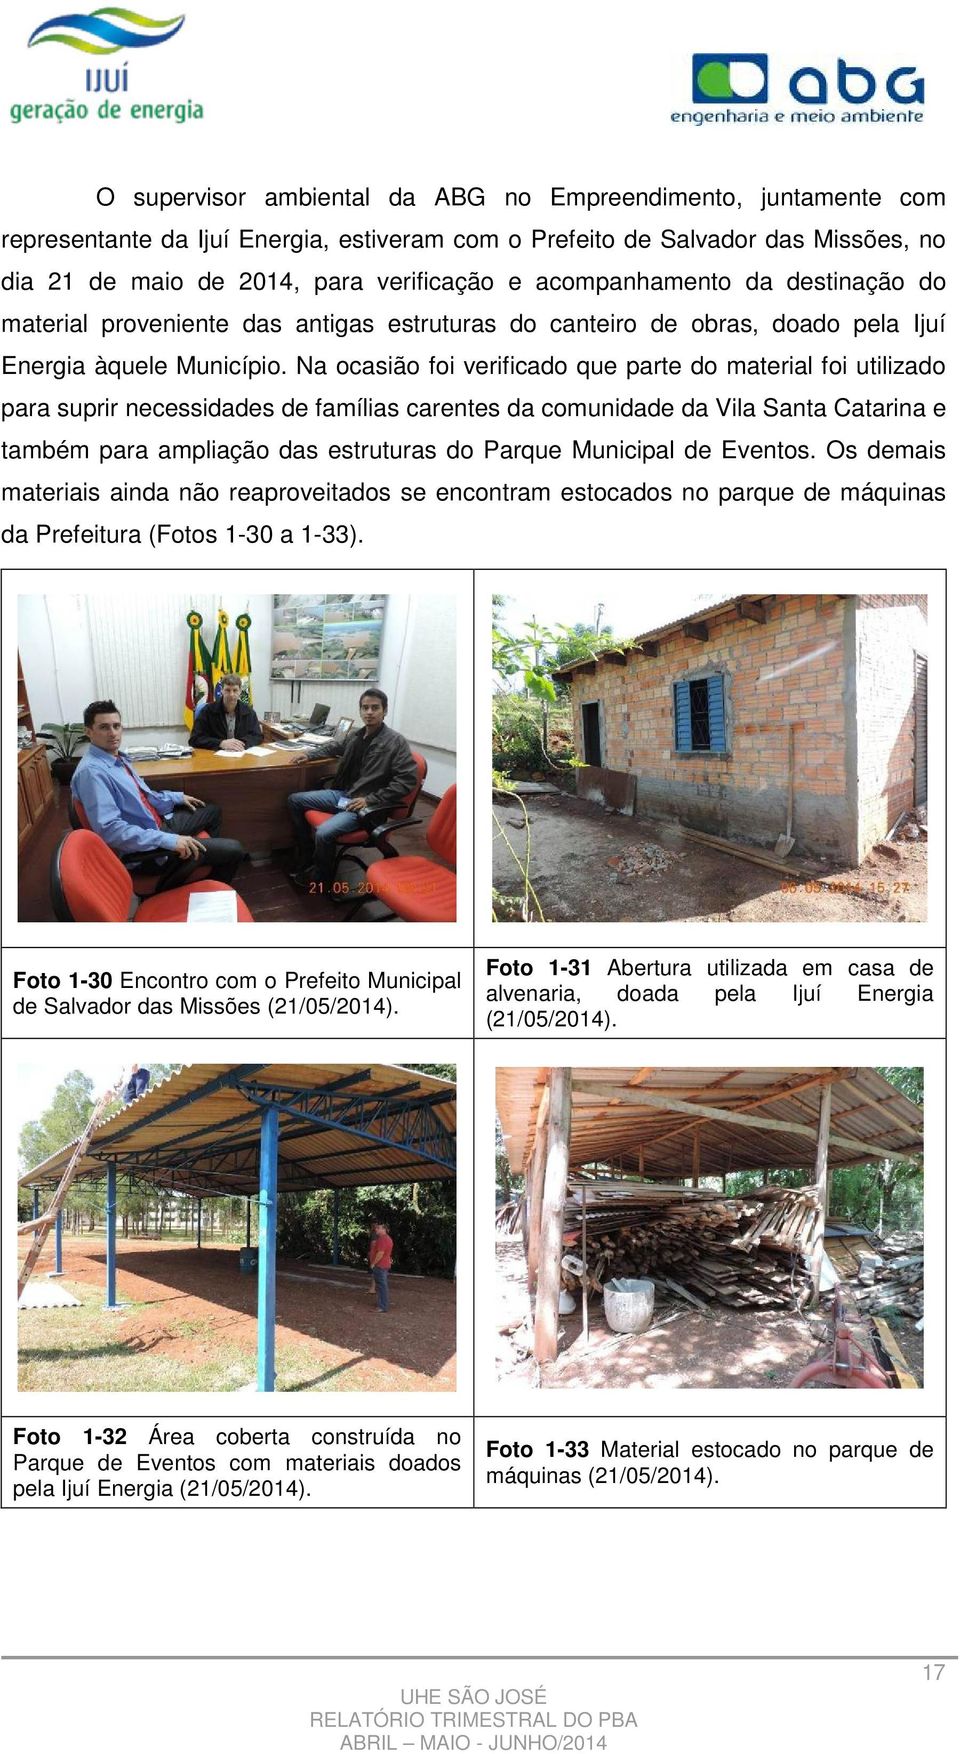 Na ocasião foi verificado que parte do material foi utilizado para suprir necessidades de famílias carentes da comunidade da Vila Santa Catarina e também para ampliação das estruturas do Parque